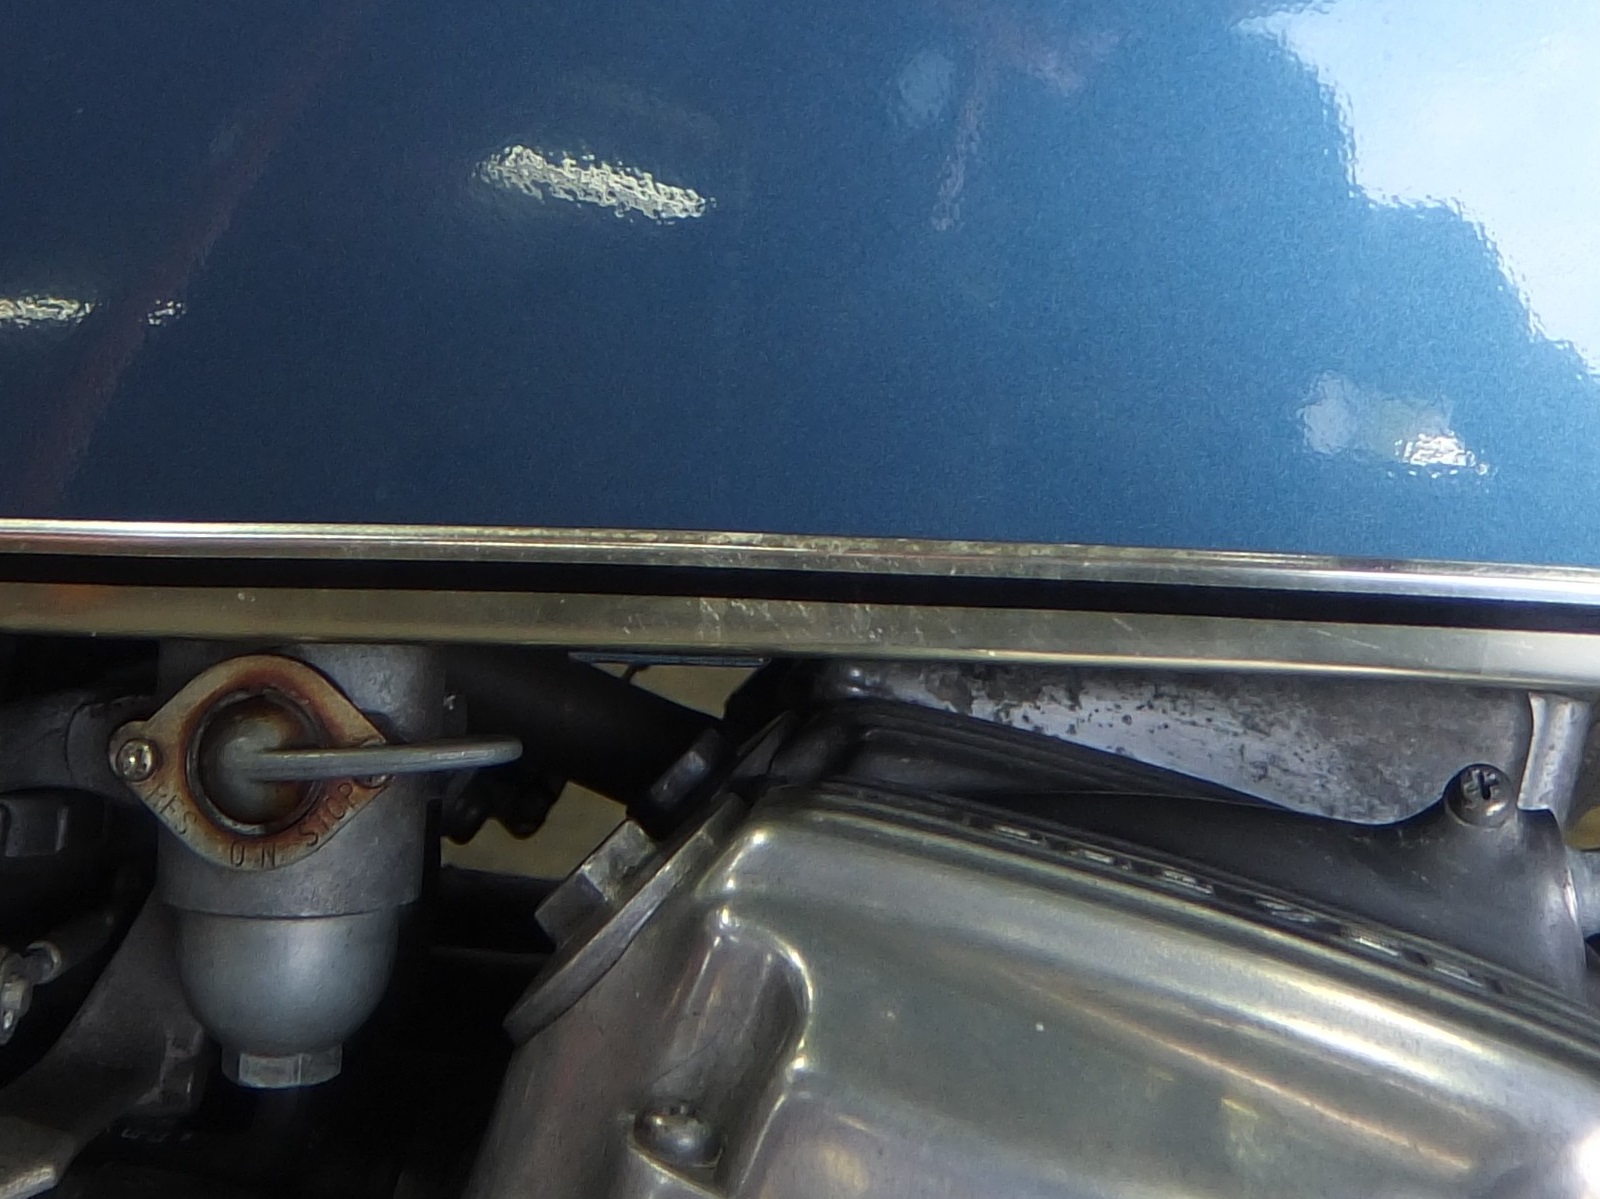 リザーブタンクレバーには錆び、エンジンヘッドカバーには塗装はげ。手の入りにくい箇所には大き目の劣化も